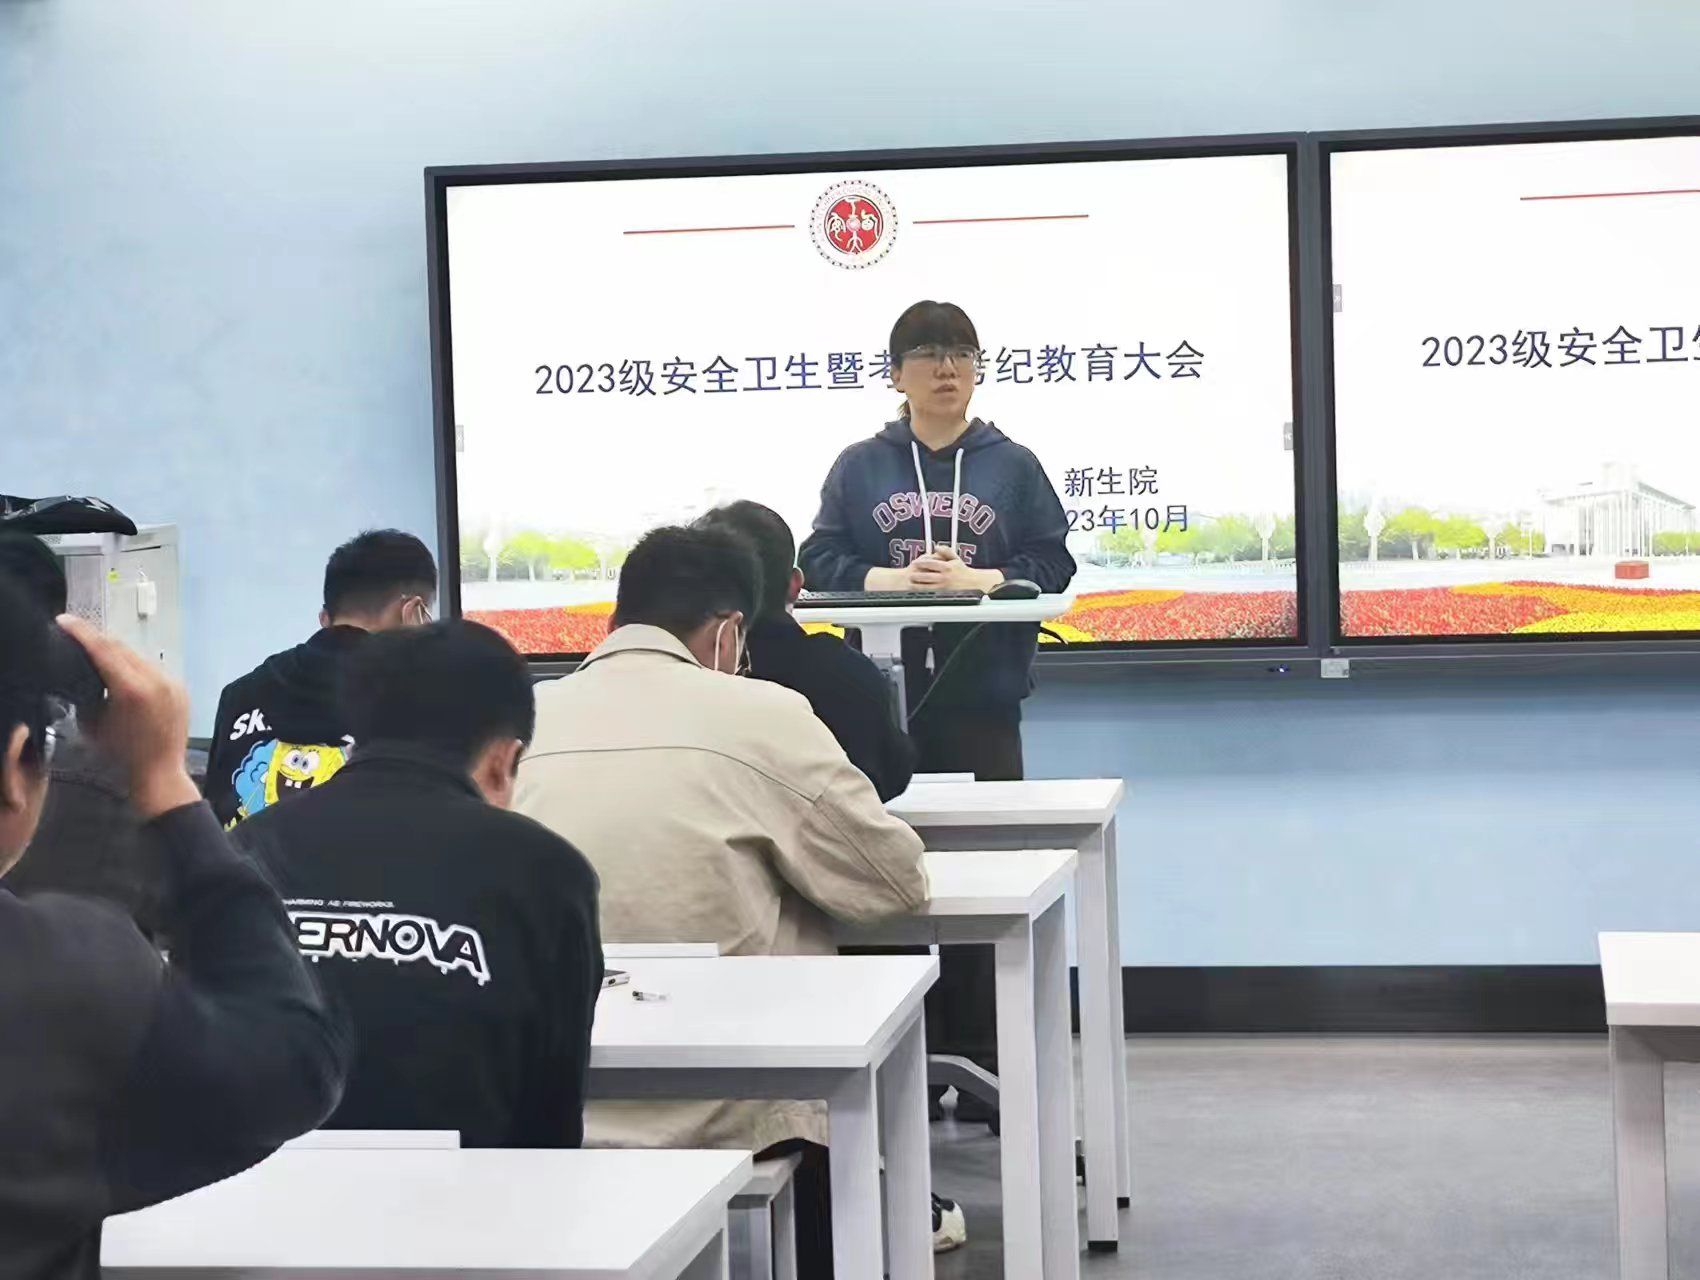 beat365中国在线体育召开2023级宿舍安全暨考风考纪教育大会